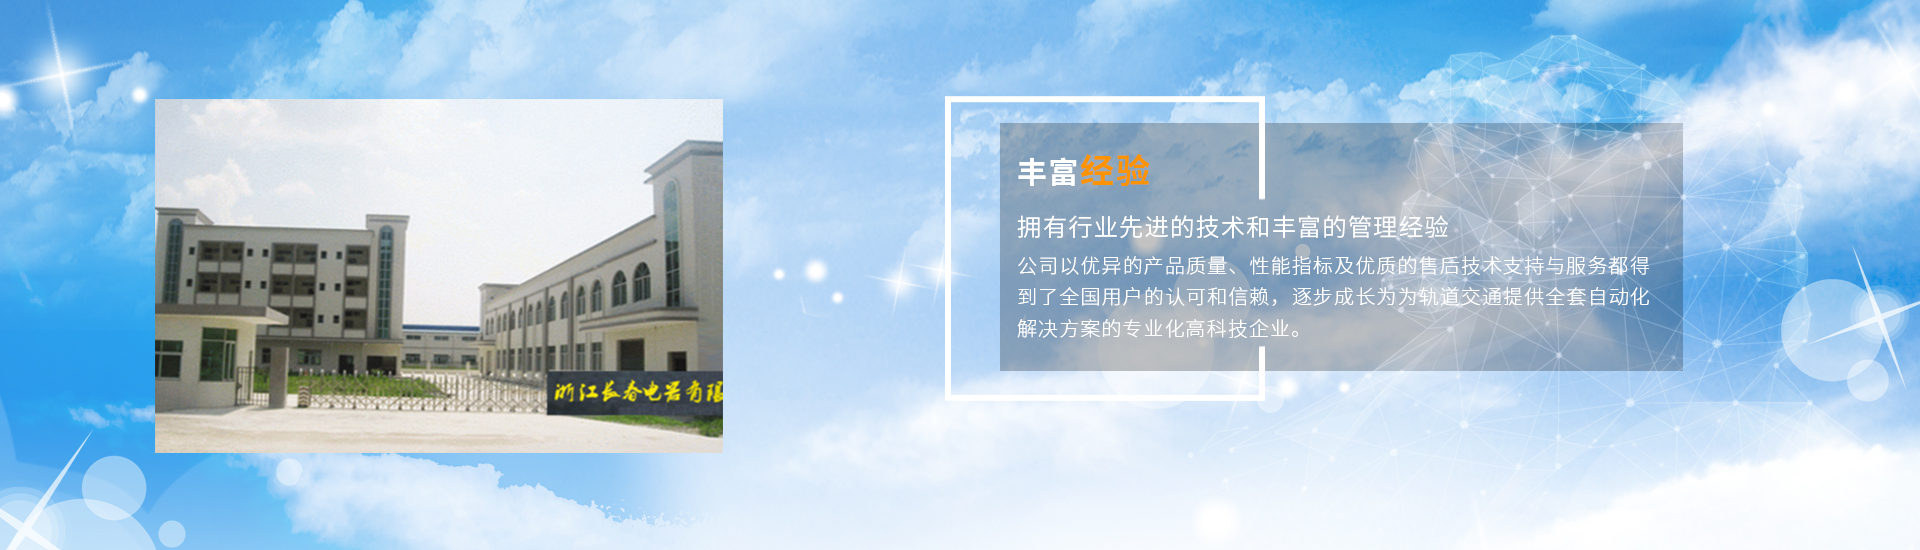 关于当前产品271游戏登录·(中国)官方网站的成功案例等相关图片